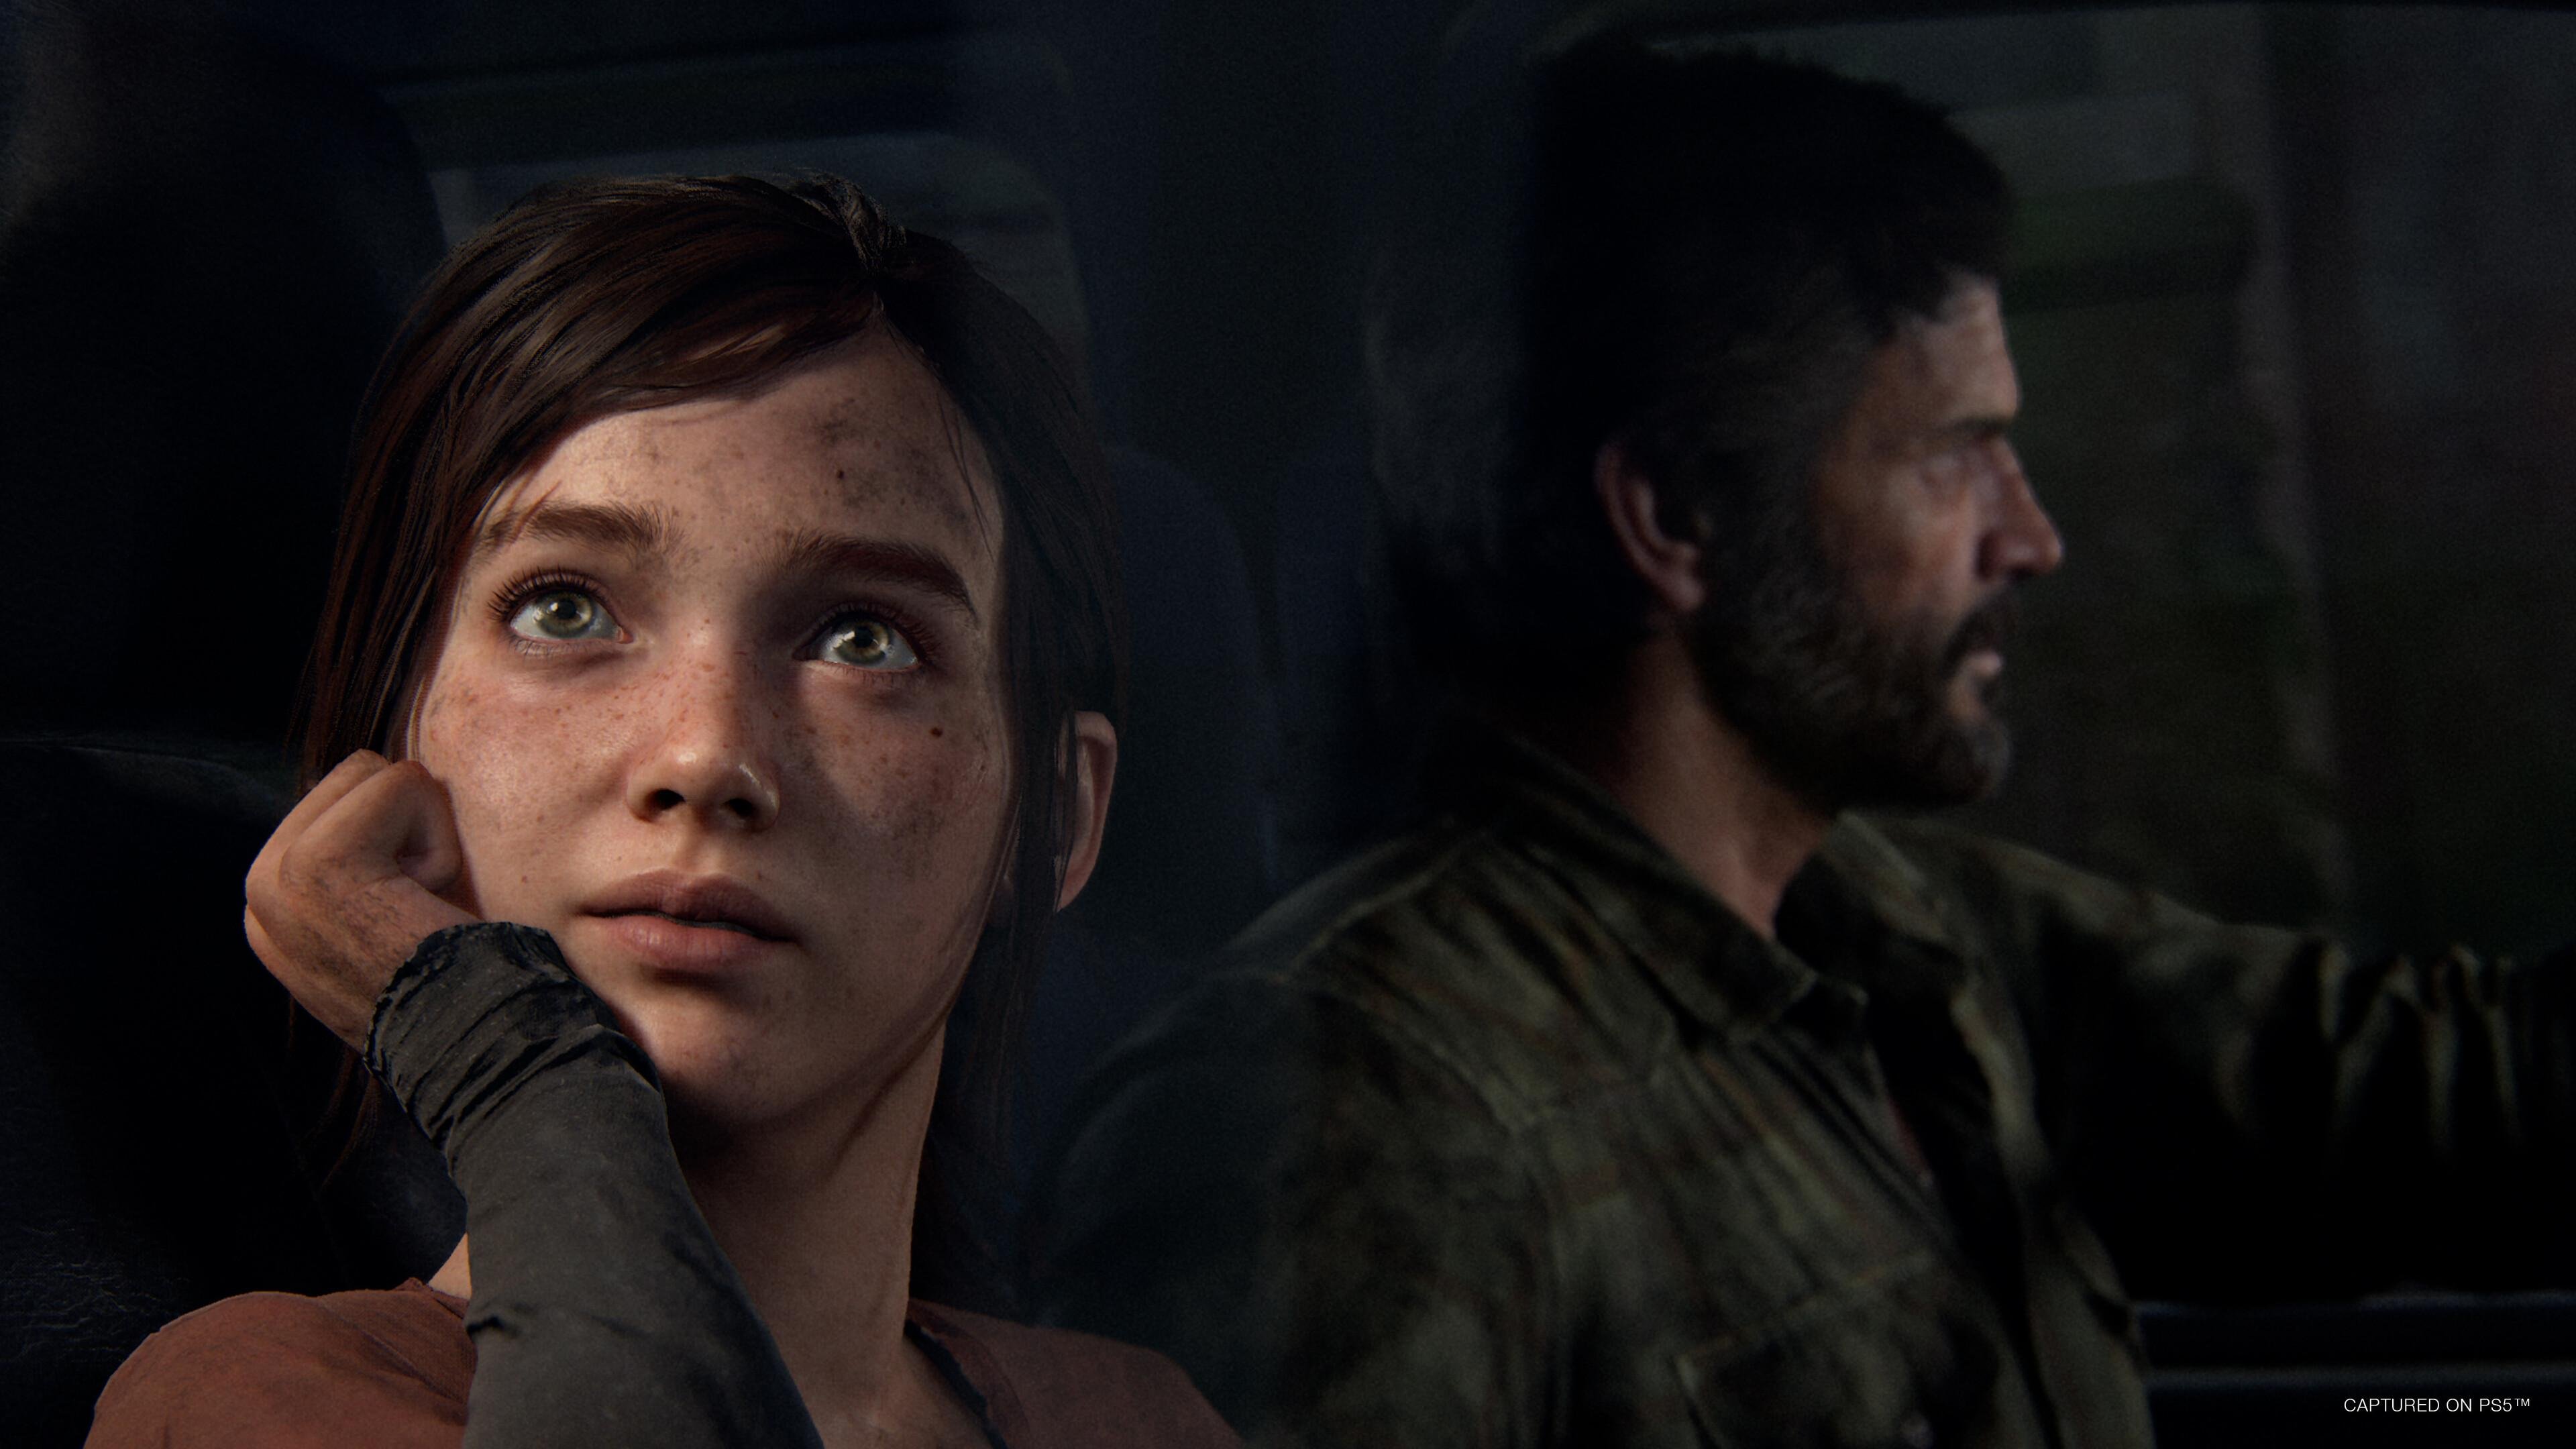 The Last of Us: Multiplayer pode ser gratuito e maior do que os